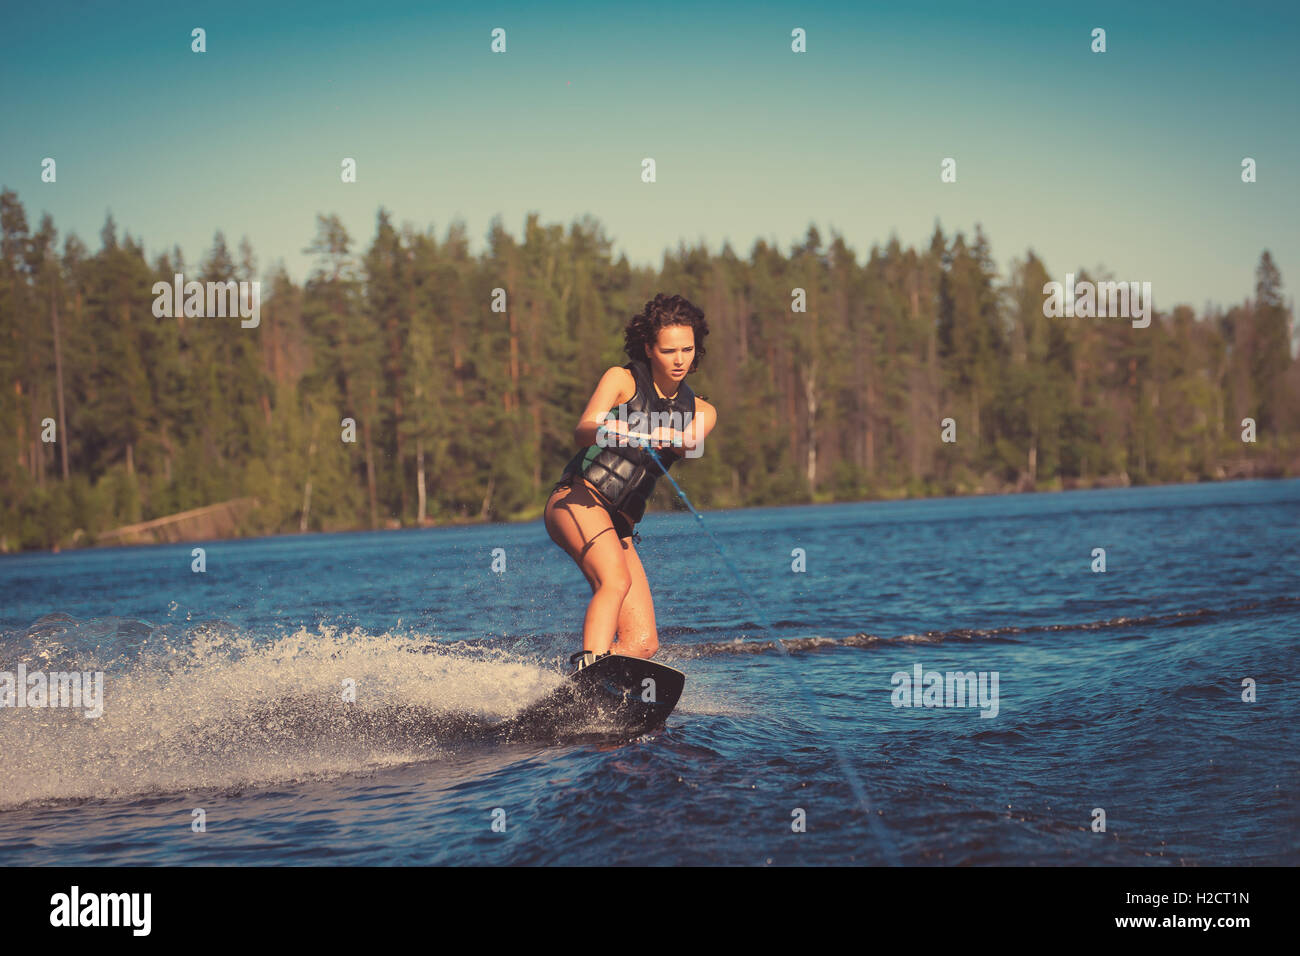 Junge hübsche Frau Studie Wakeboard fahren, an einem See Stockfoto